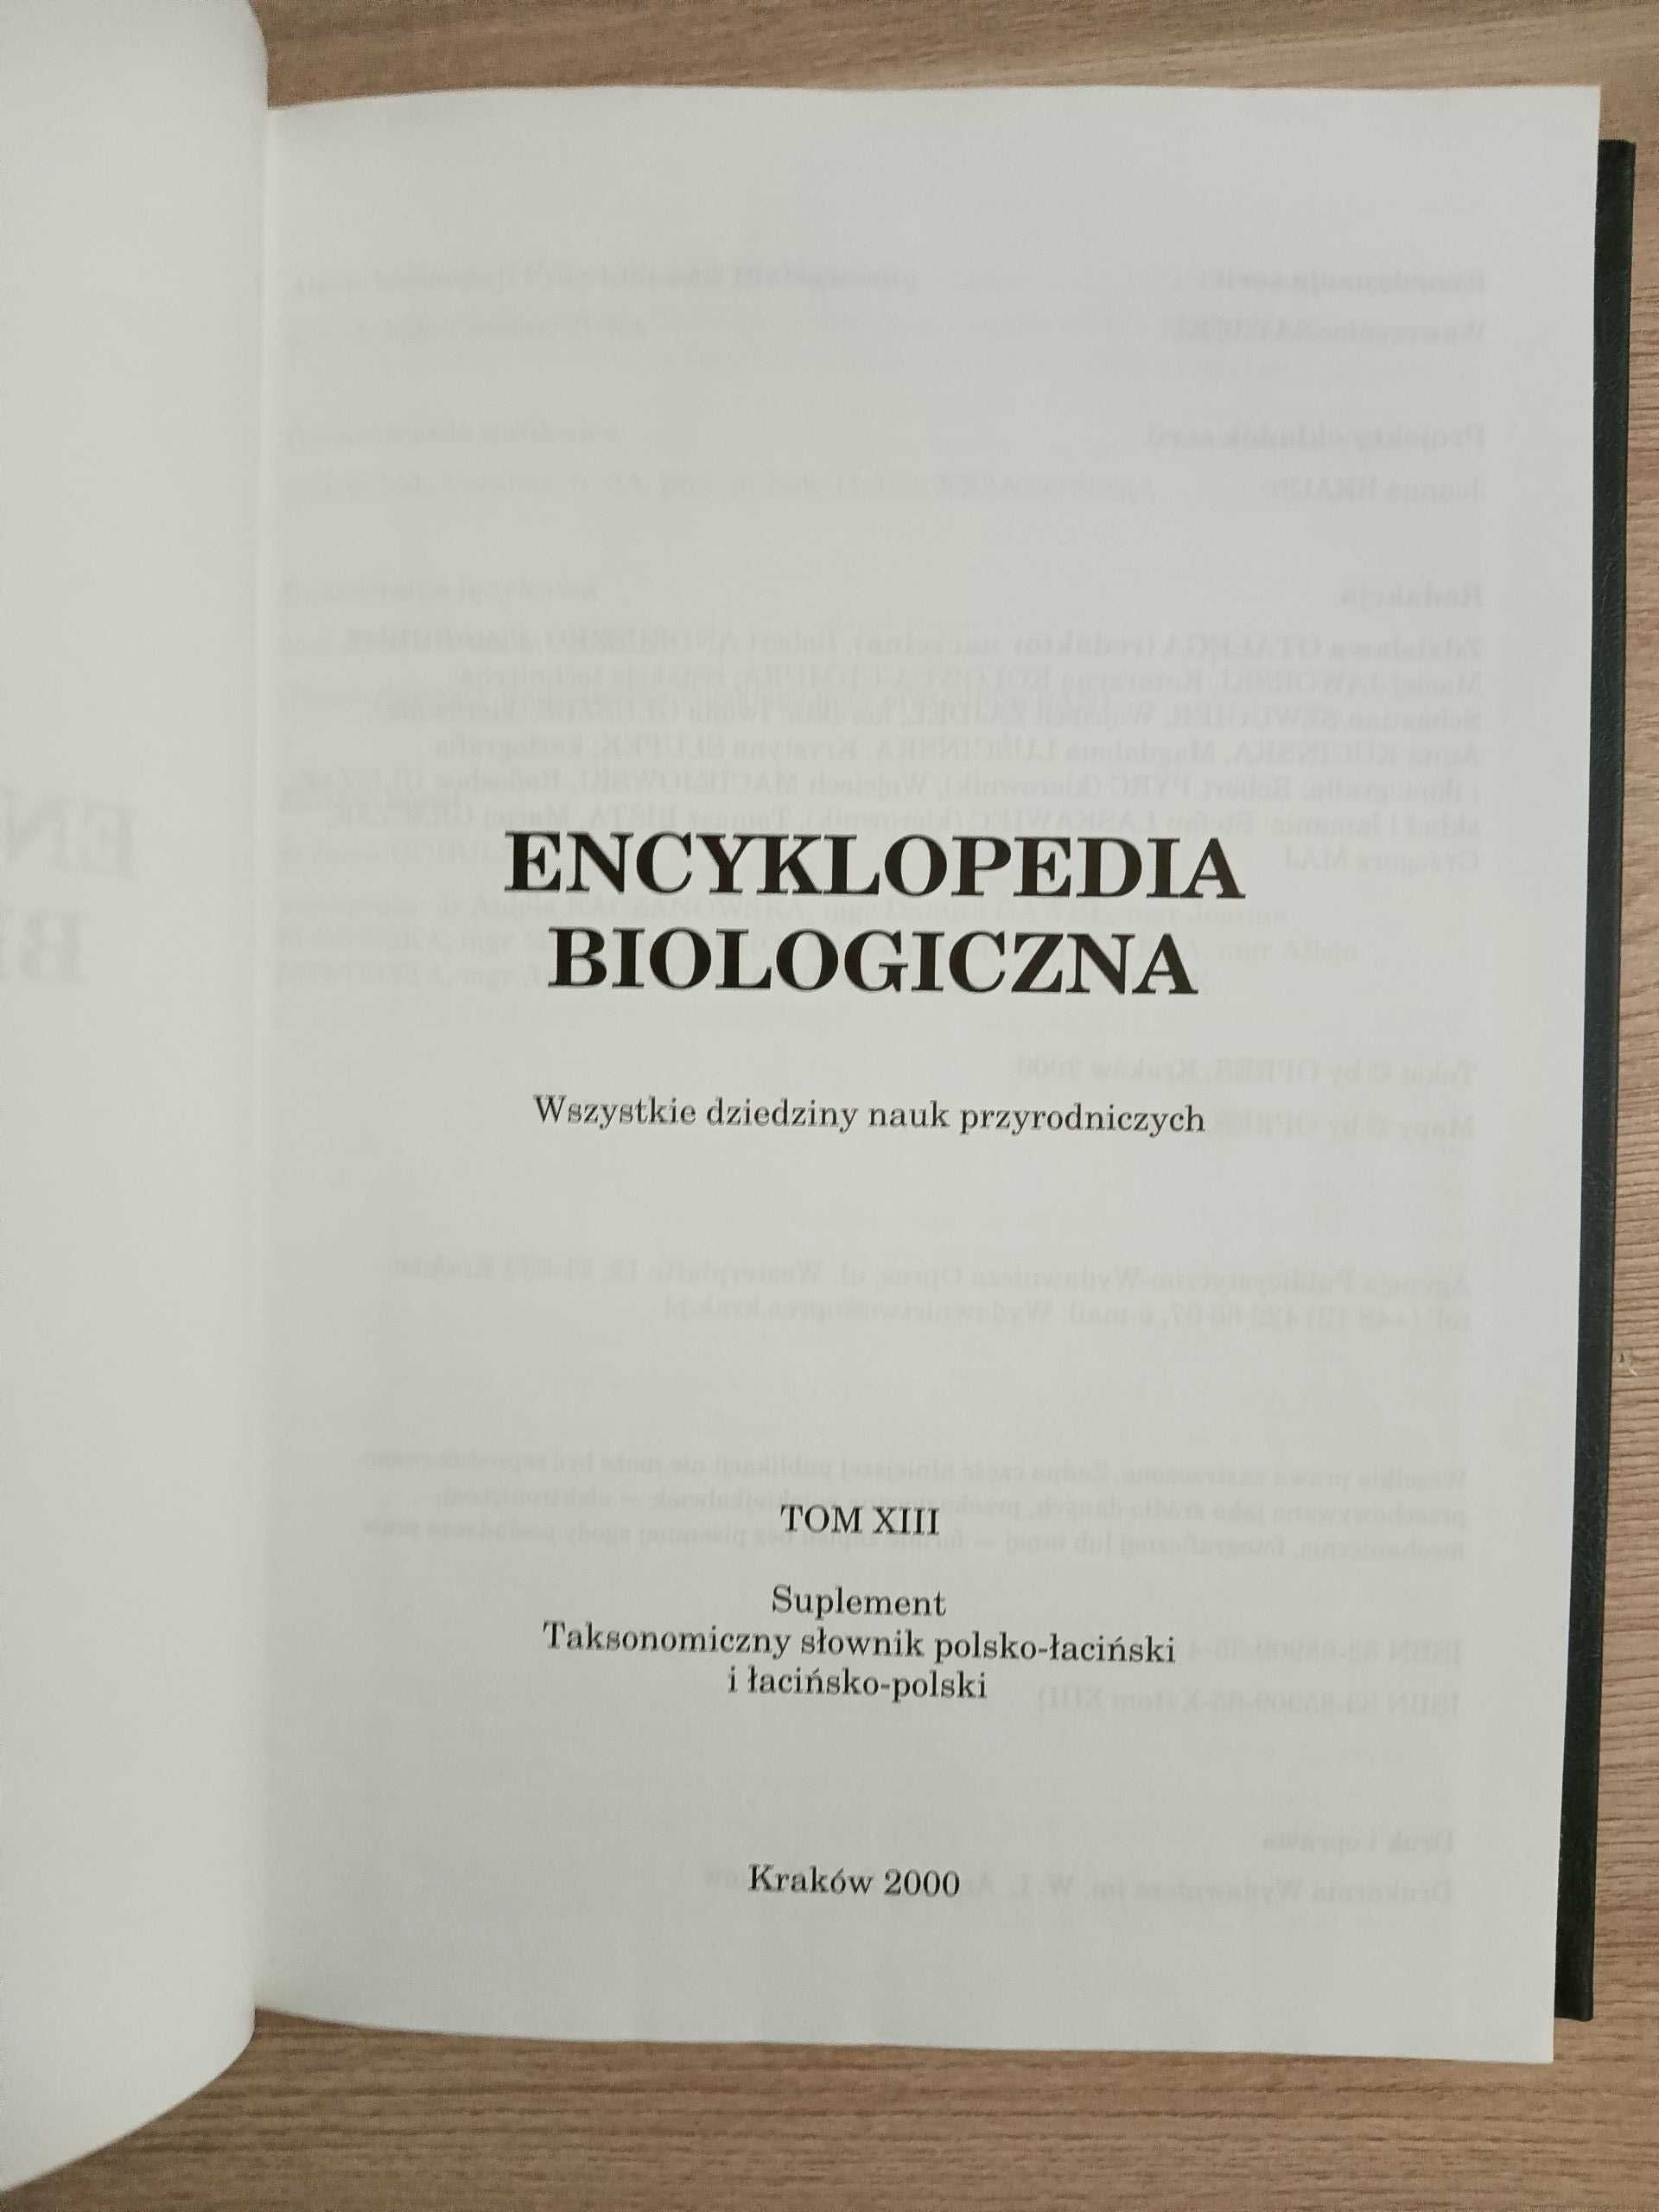 Encyklopedia Biologiczna Tom XIII Suplement Słownik Taksonomiczny